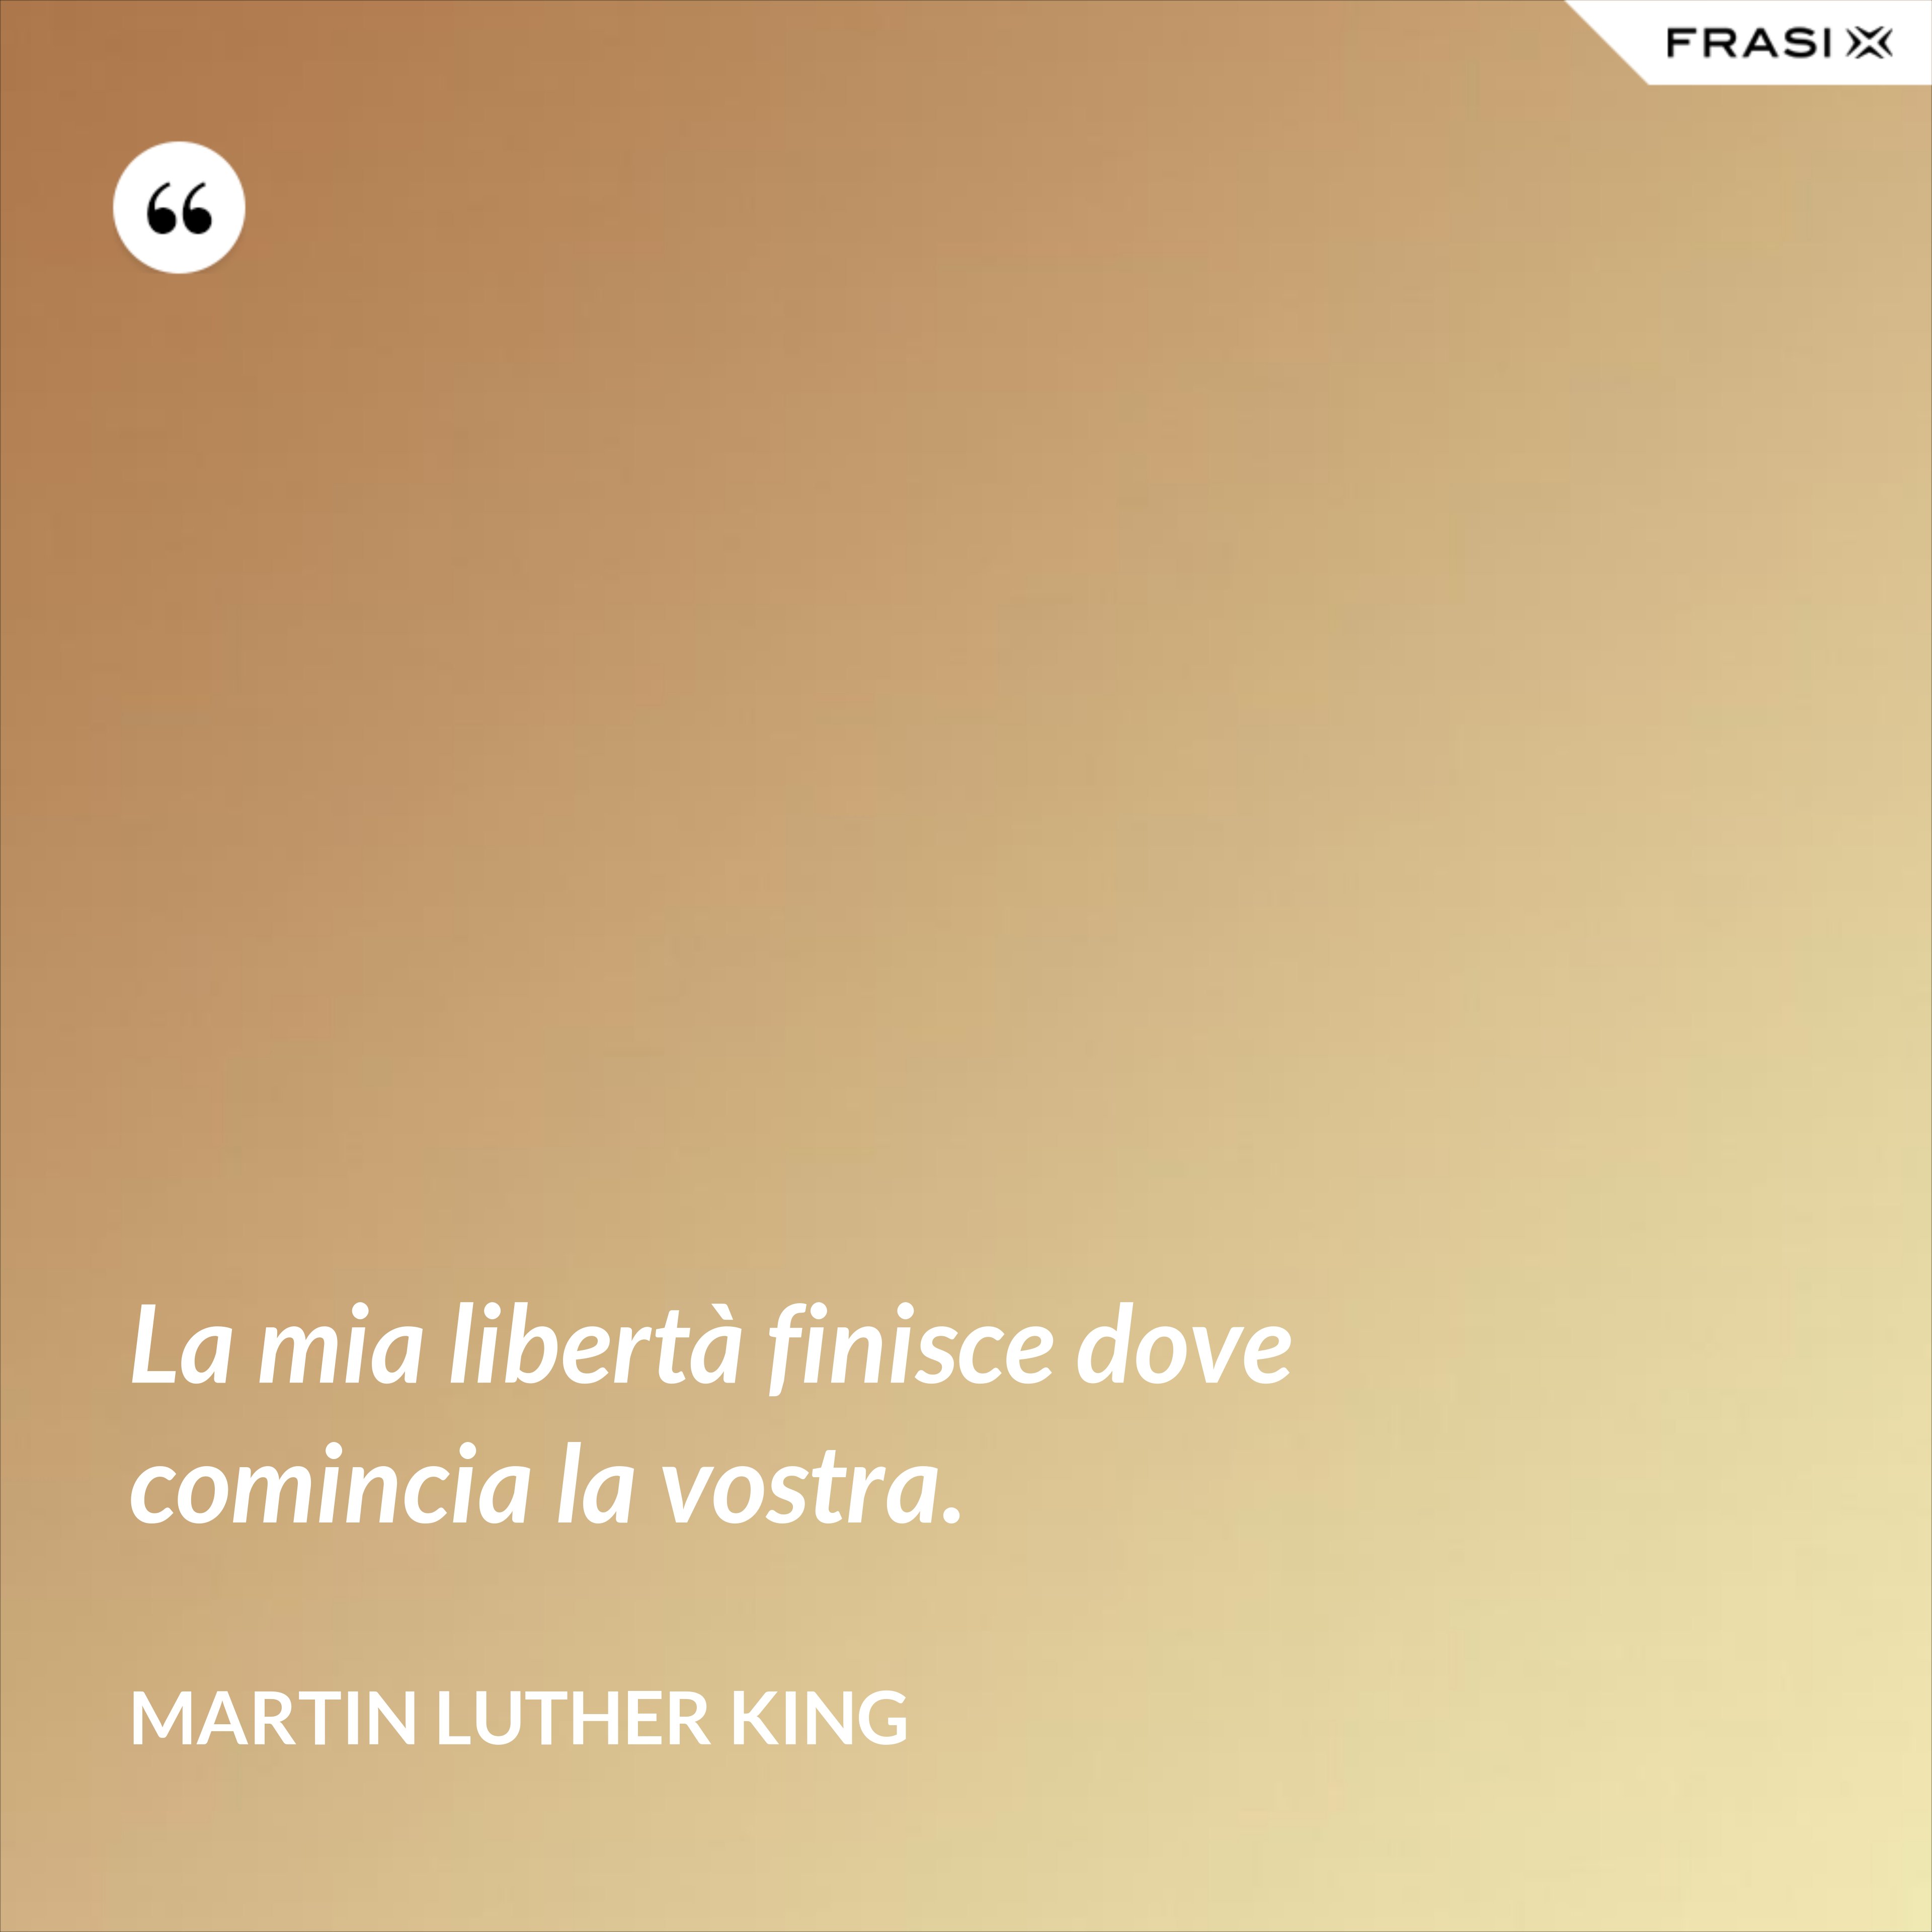 La mia libertà finisce dove comincia la vostra. - Martin Luther King